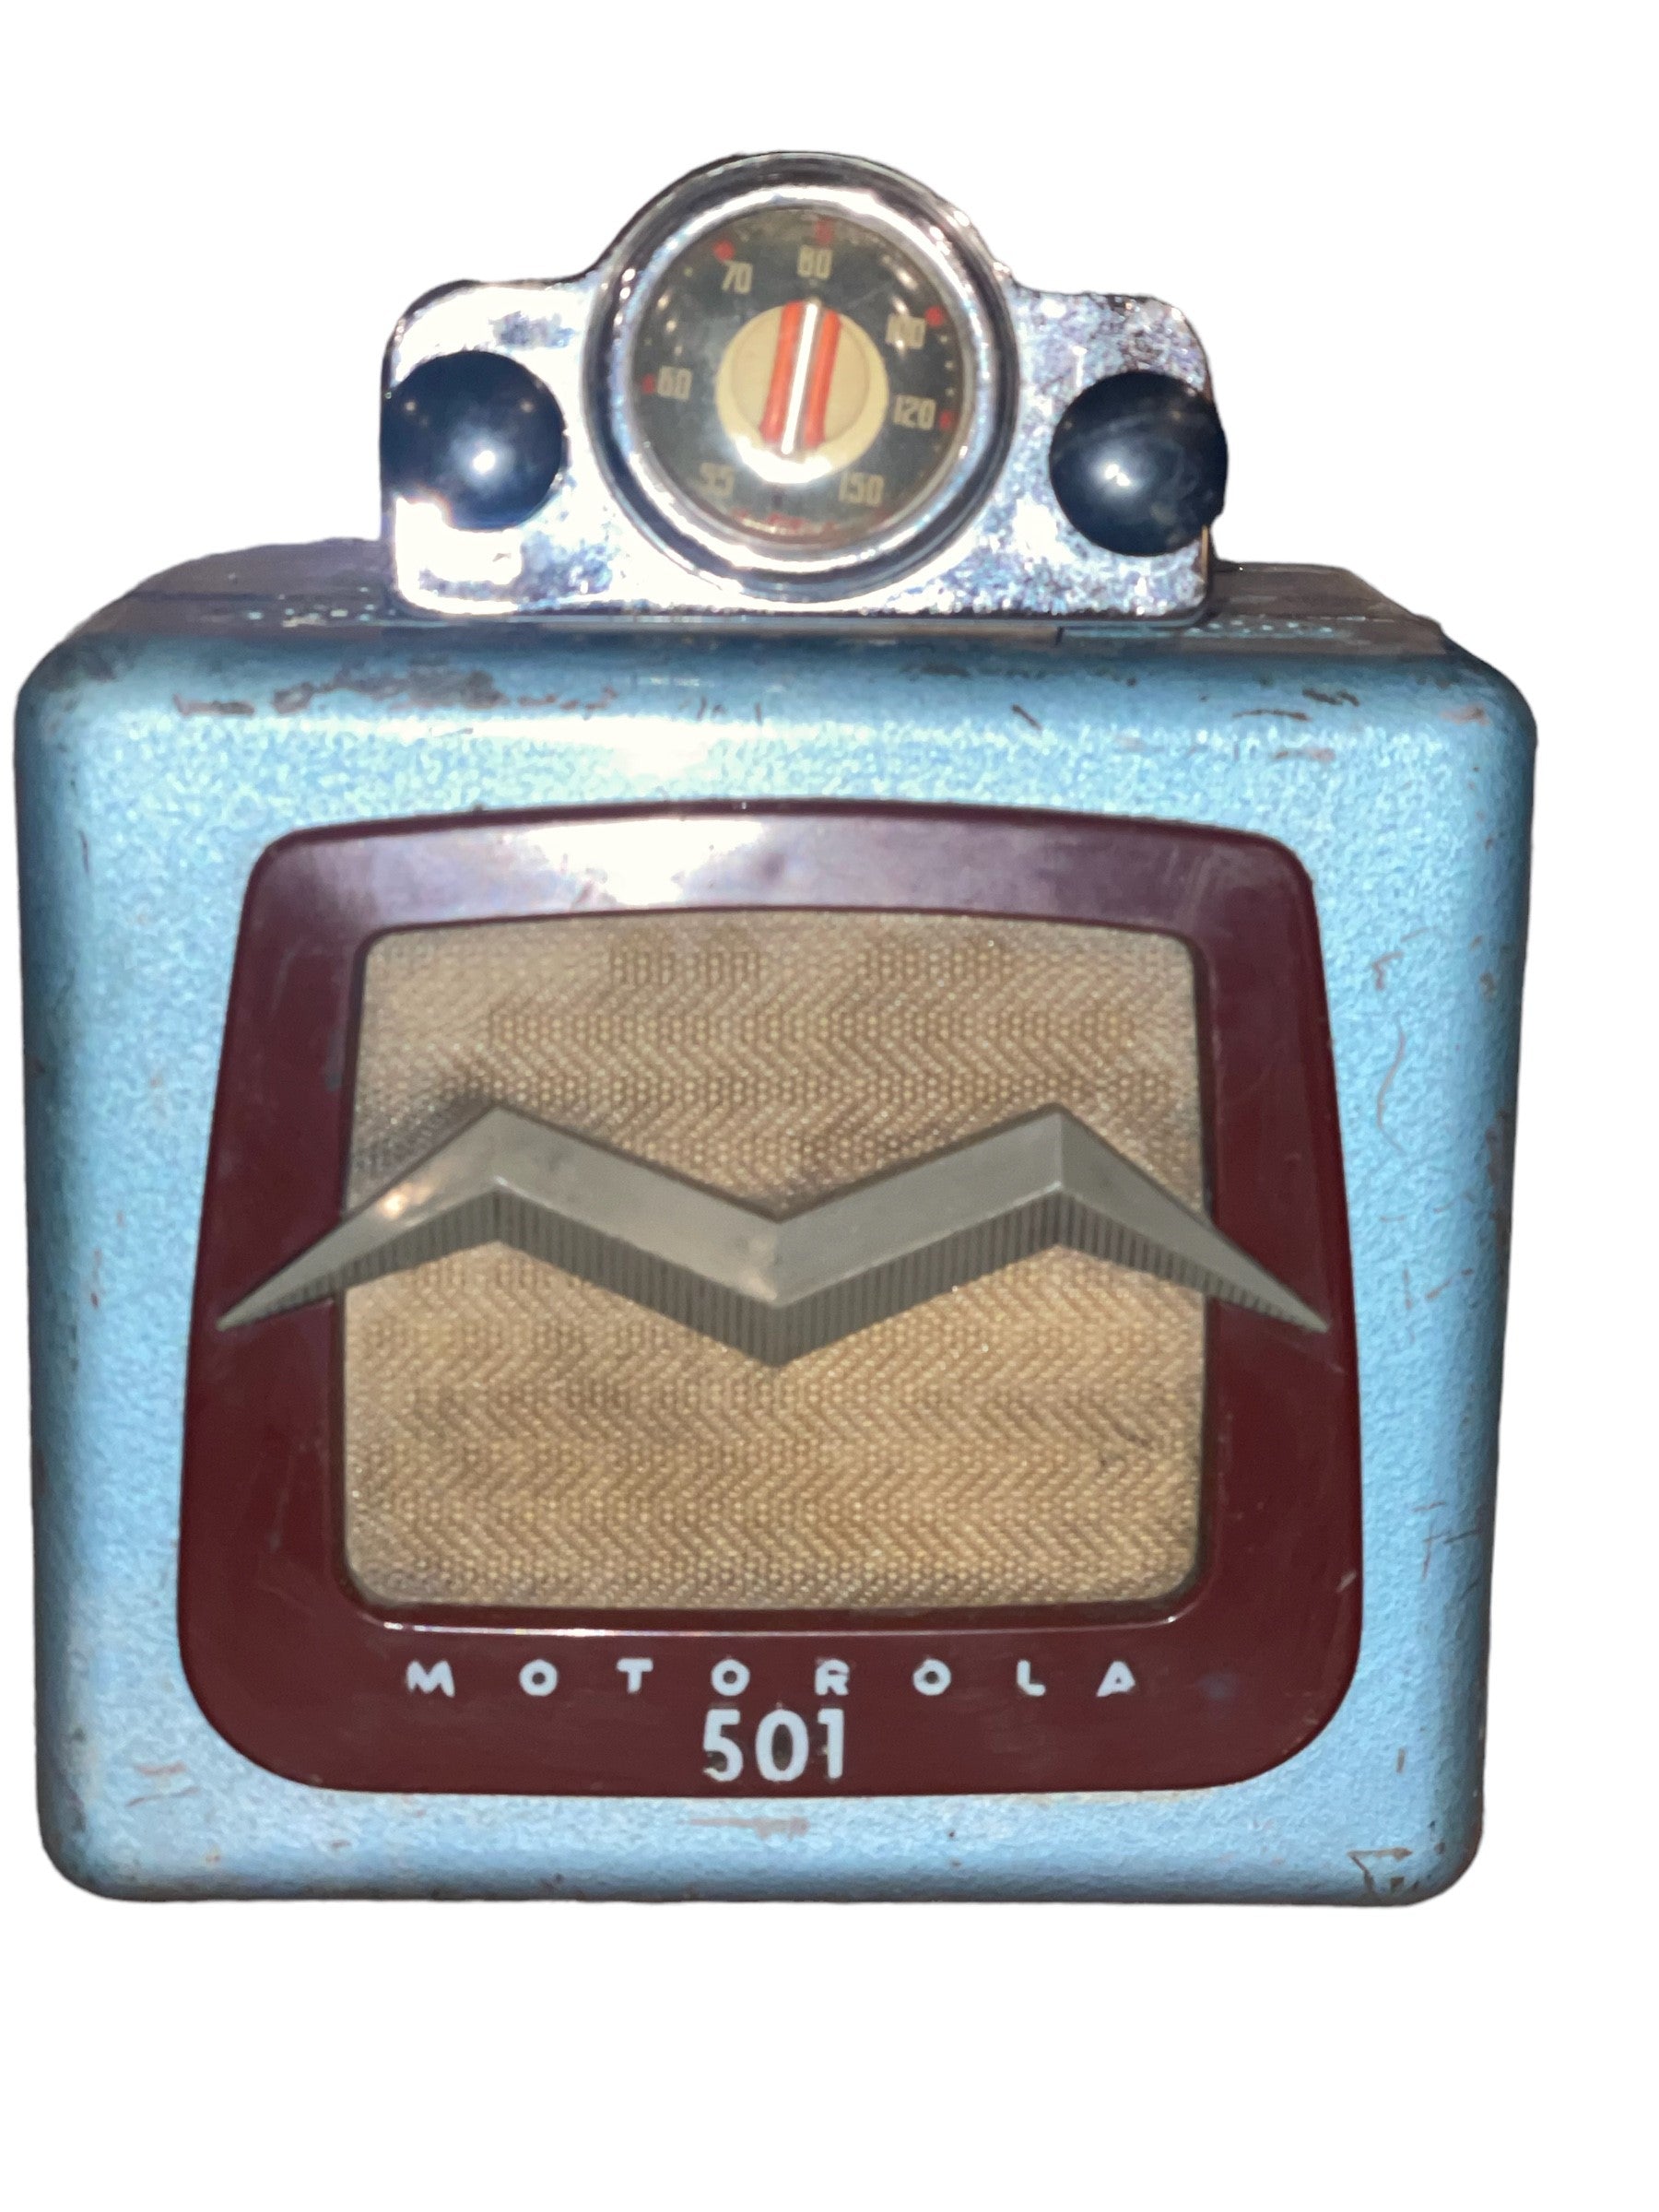 Motorola 501